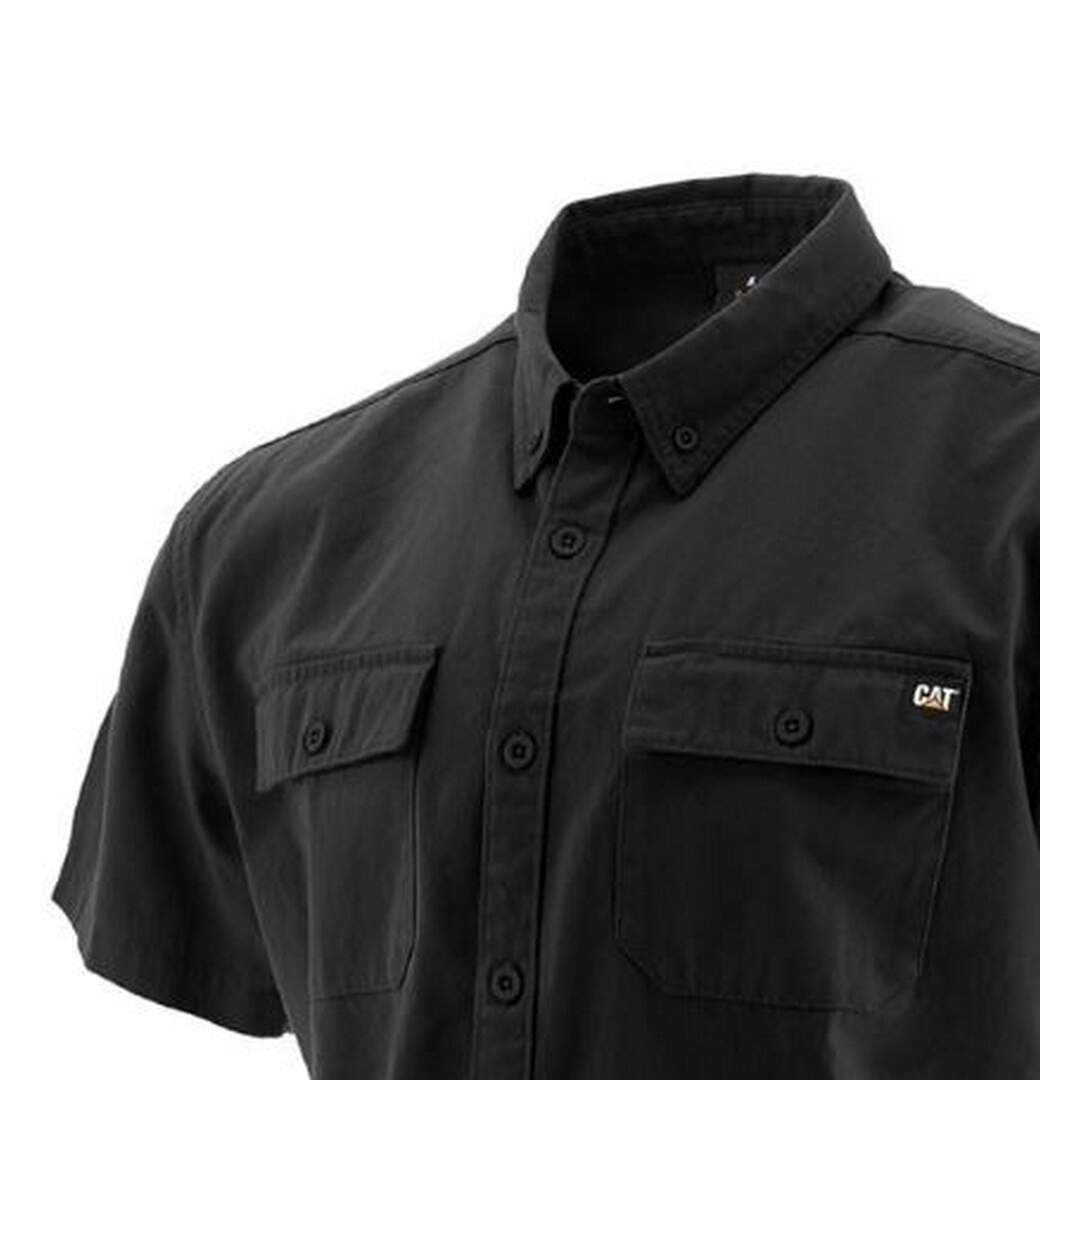 Caterpillar Mens Button Up Short Sleeve Work Shirt (Black) - UTFS6669